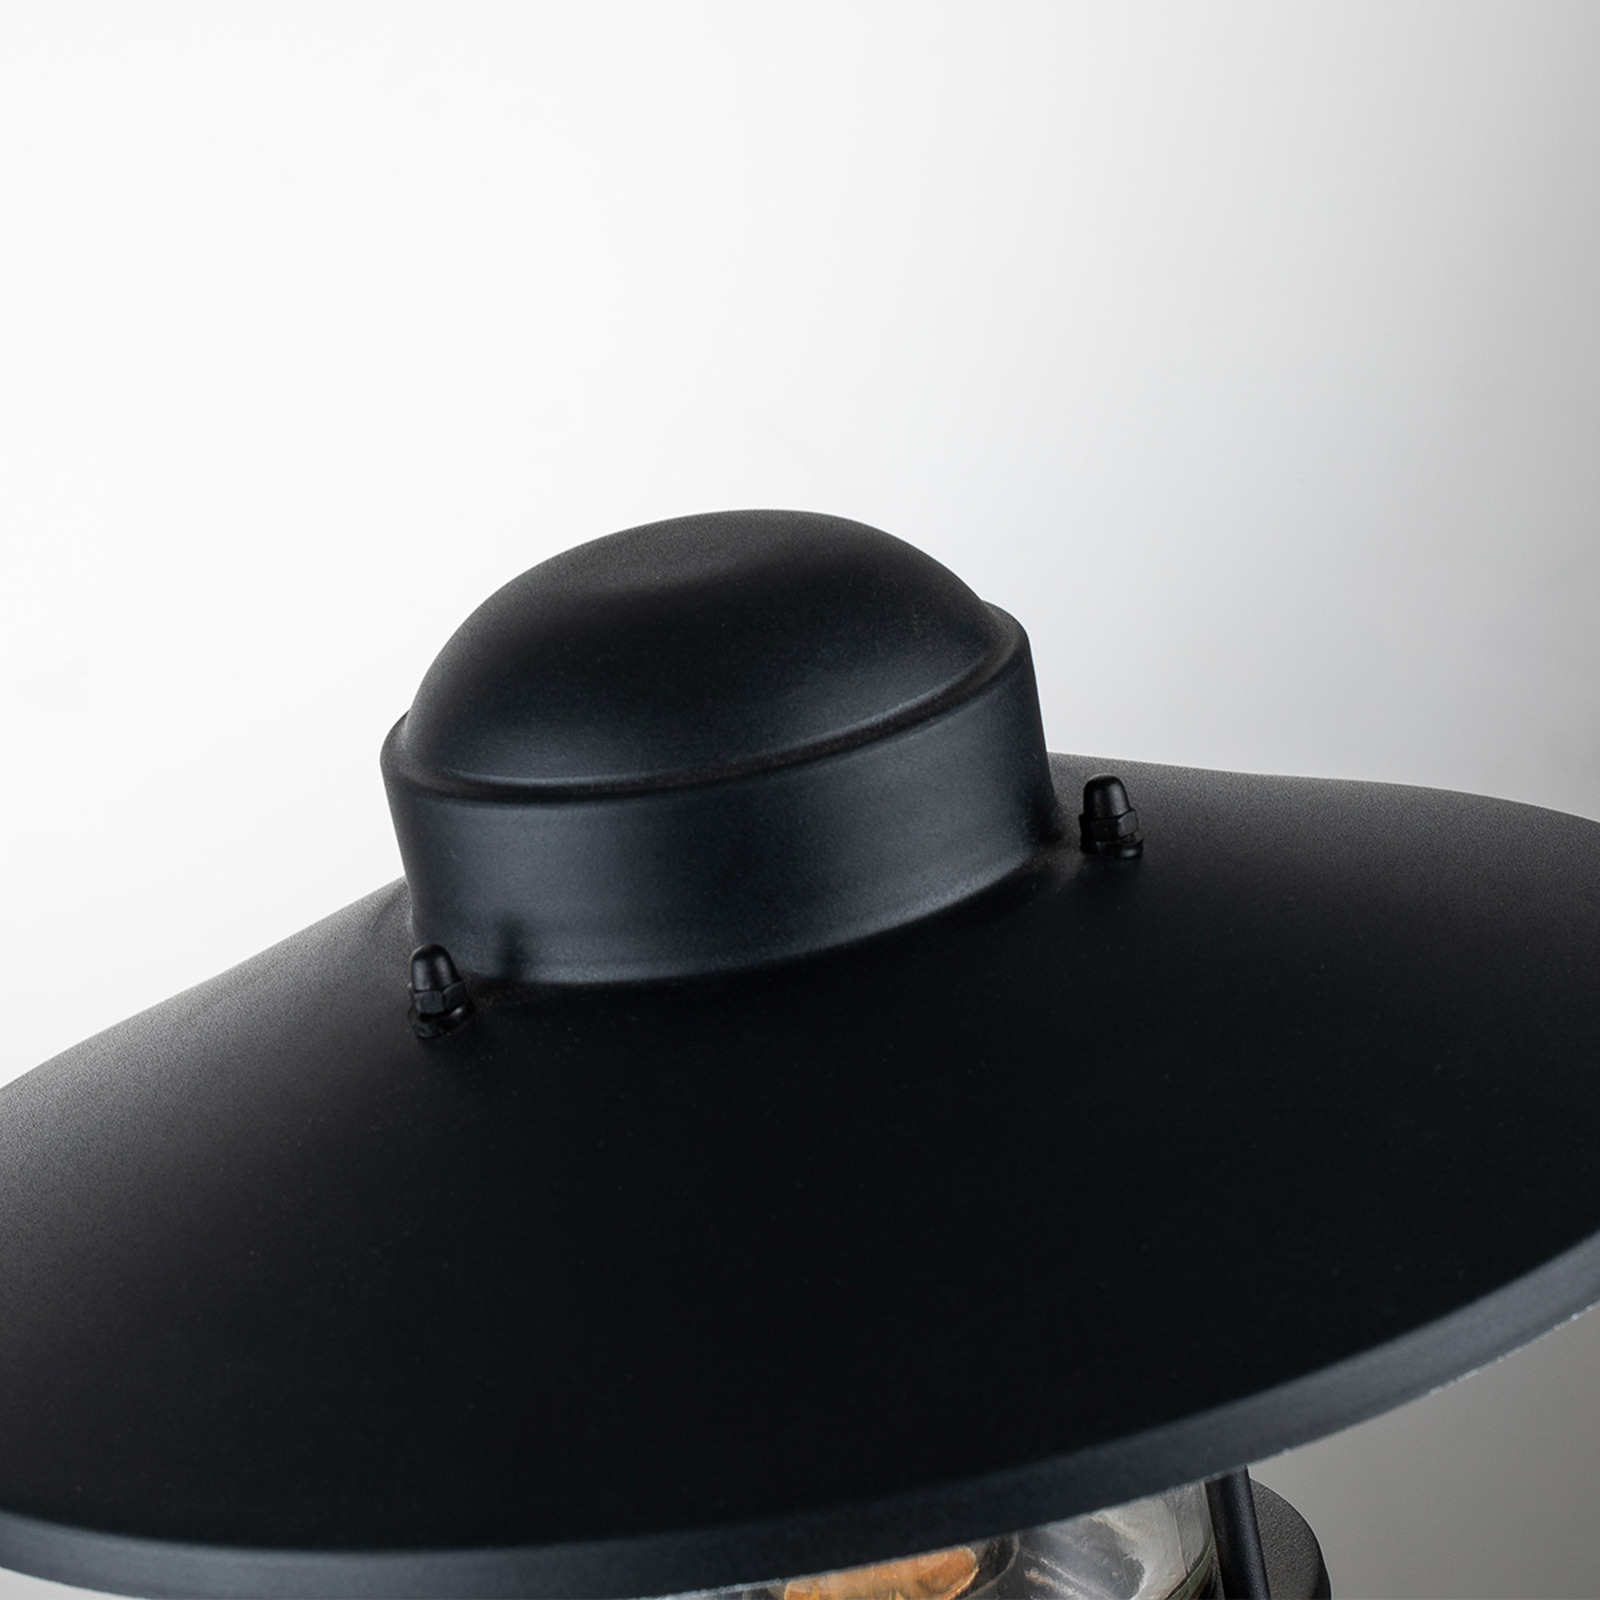 Sockelleuchte Klampenborg schwarz mit PIR-Sensor